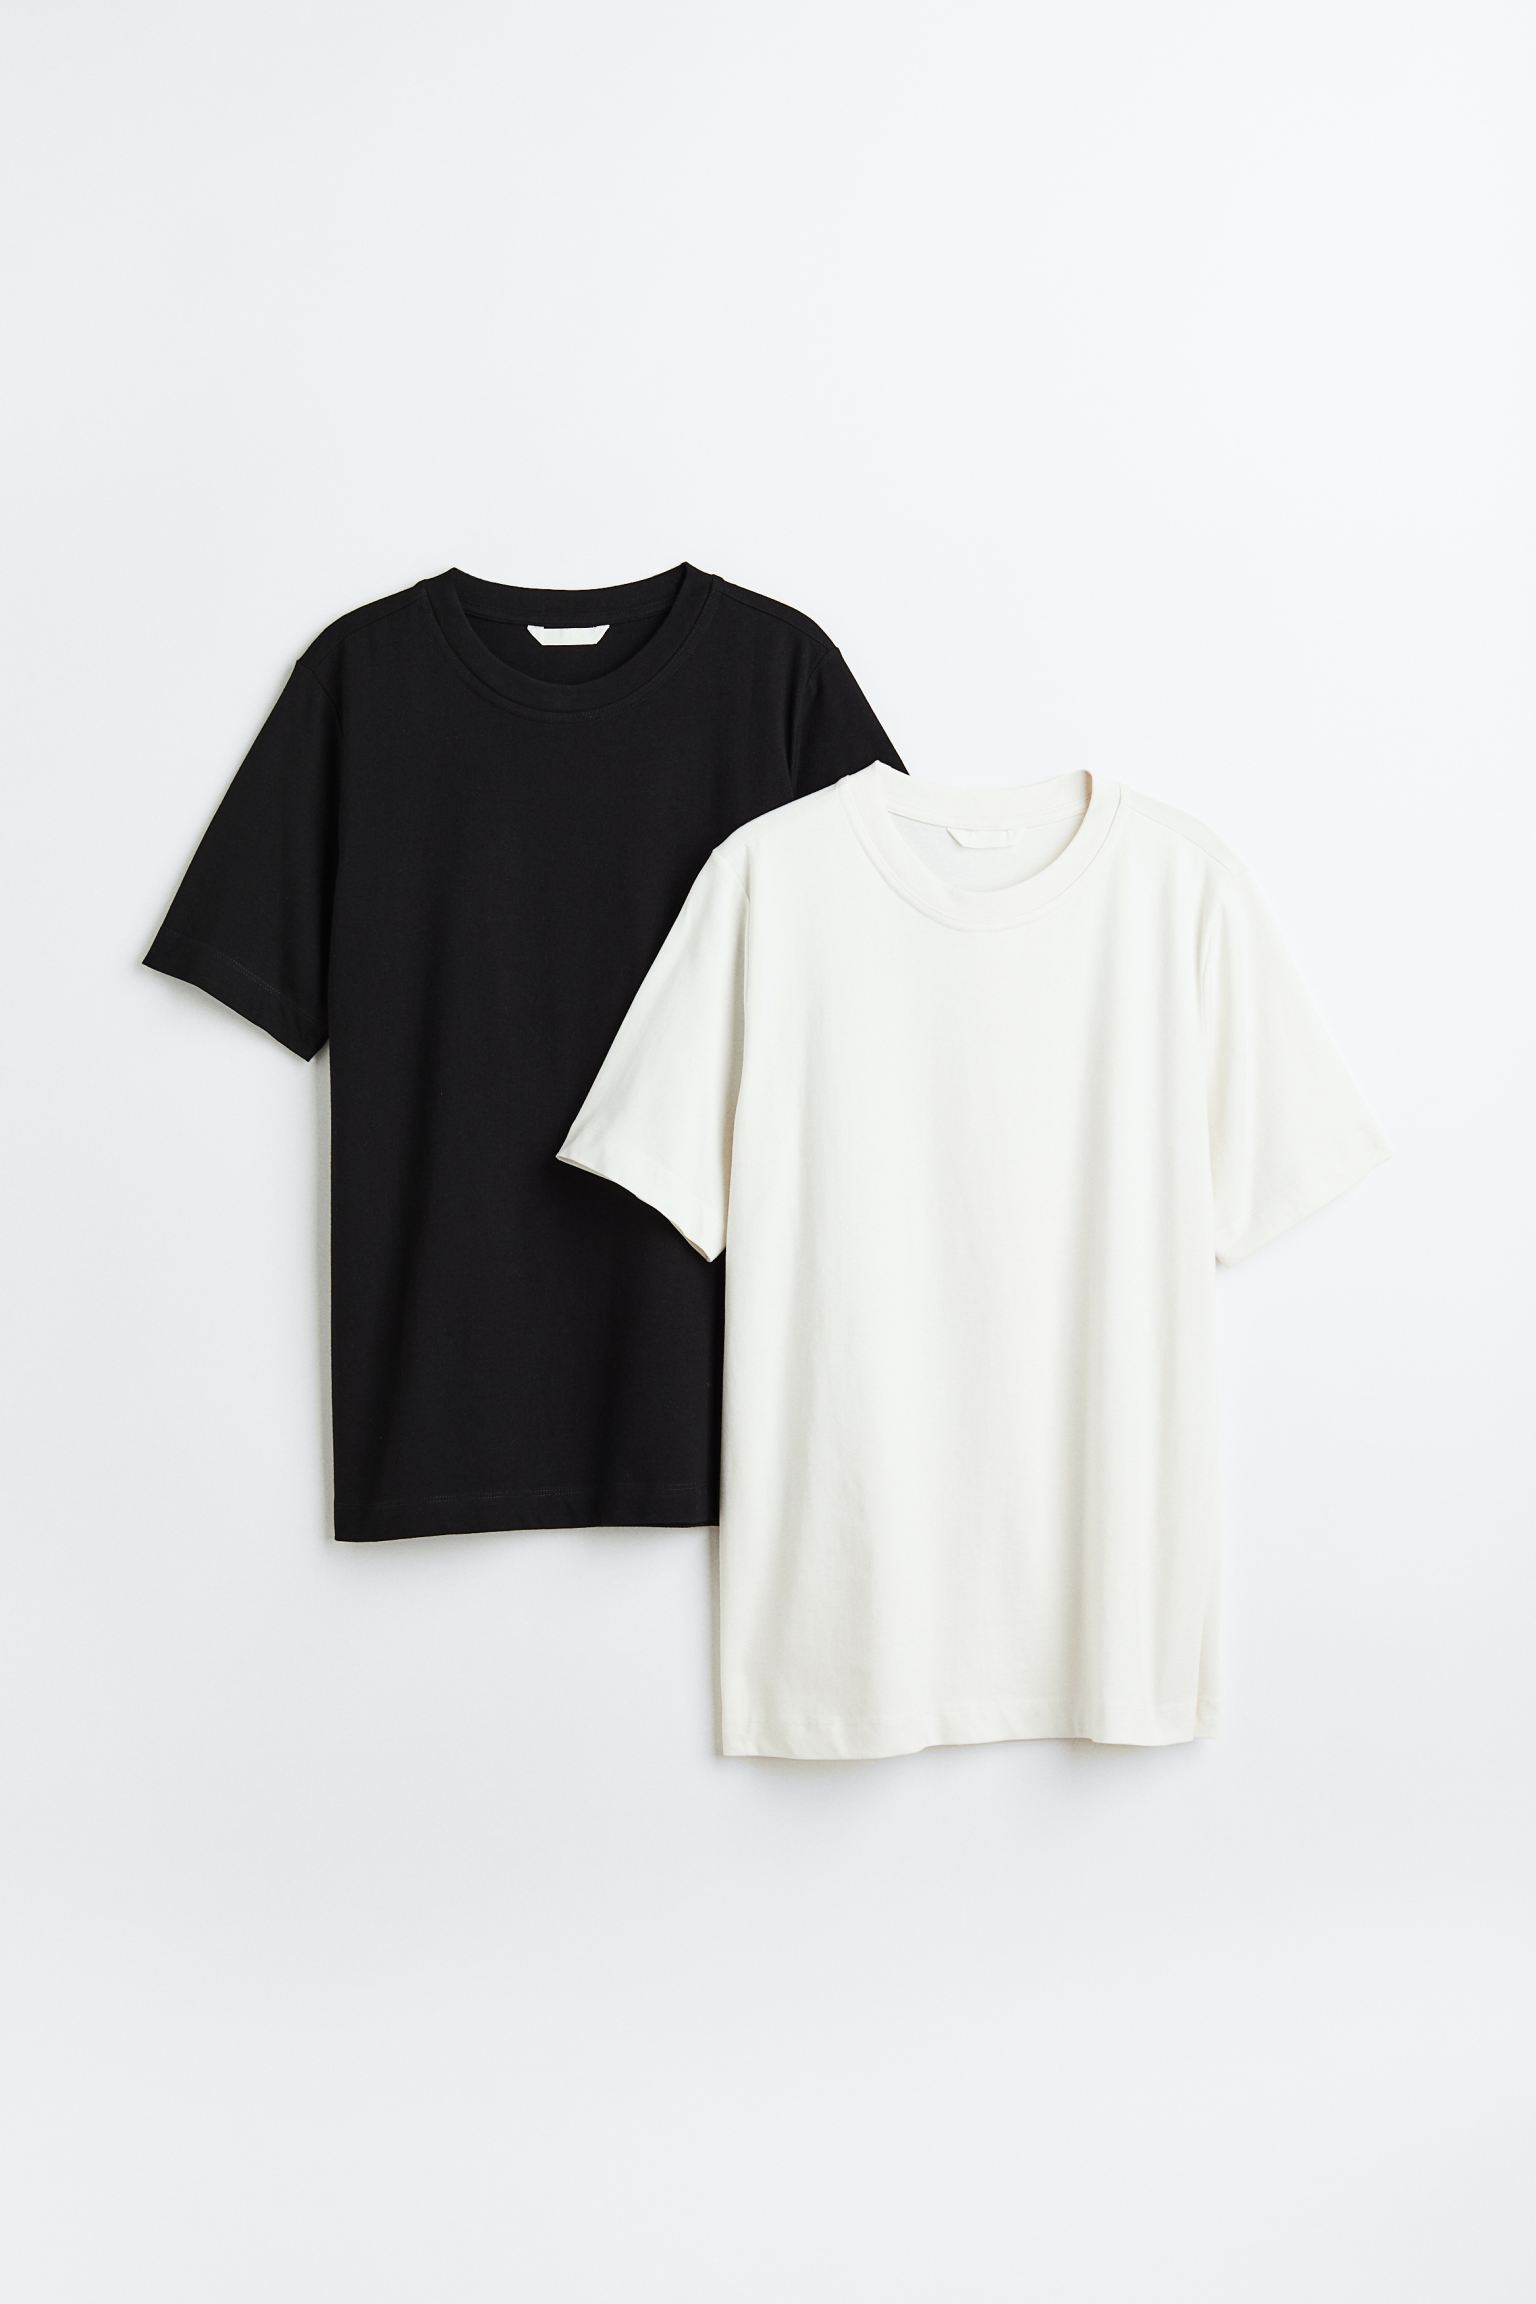 Комплект футболок женских H&M 1030468004 черных L (доставка из-за рубежа)